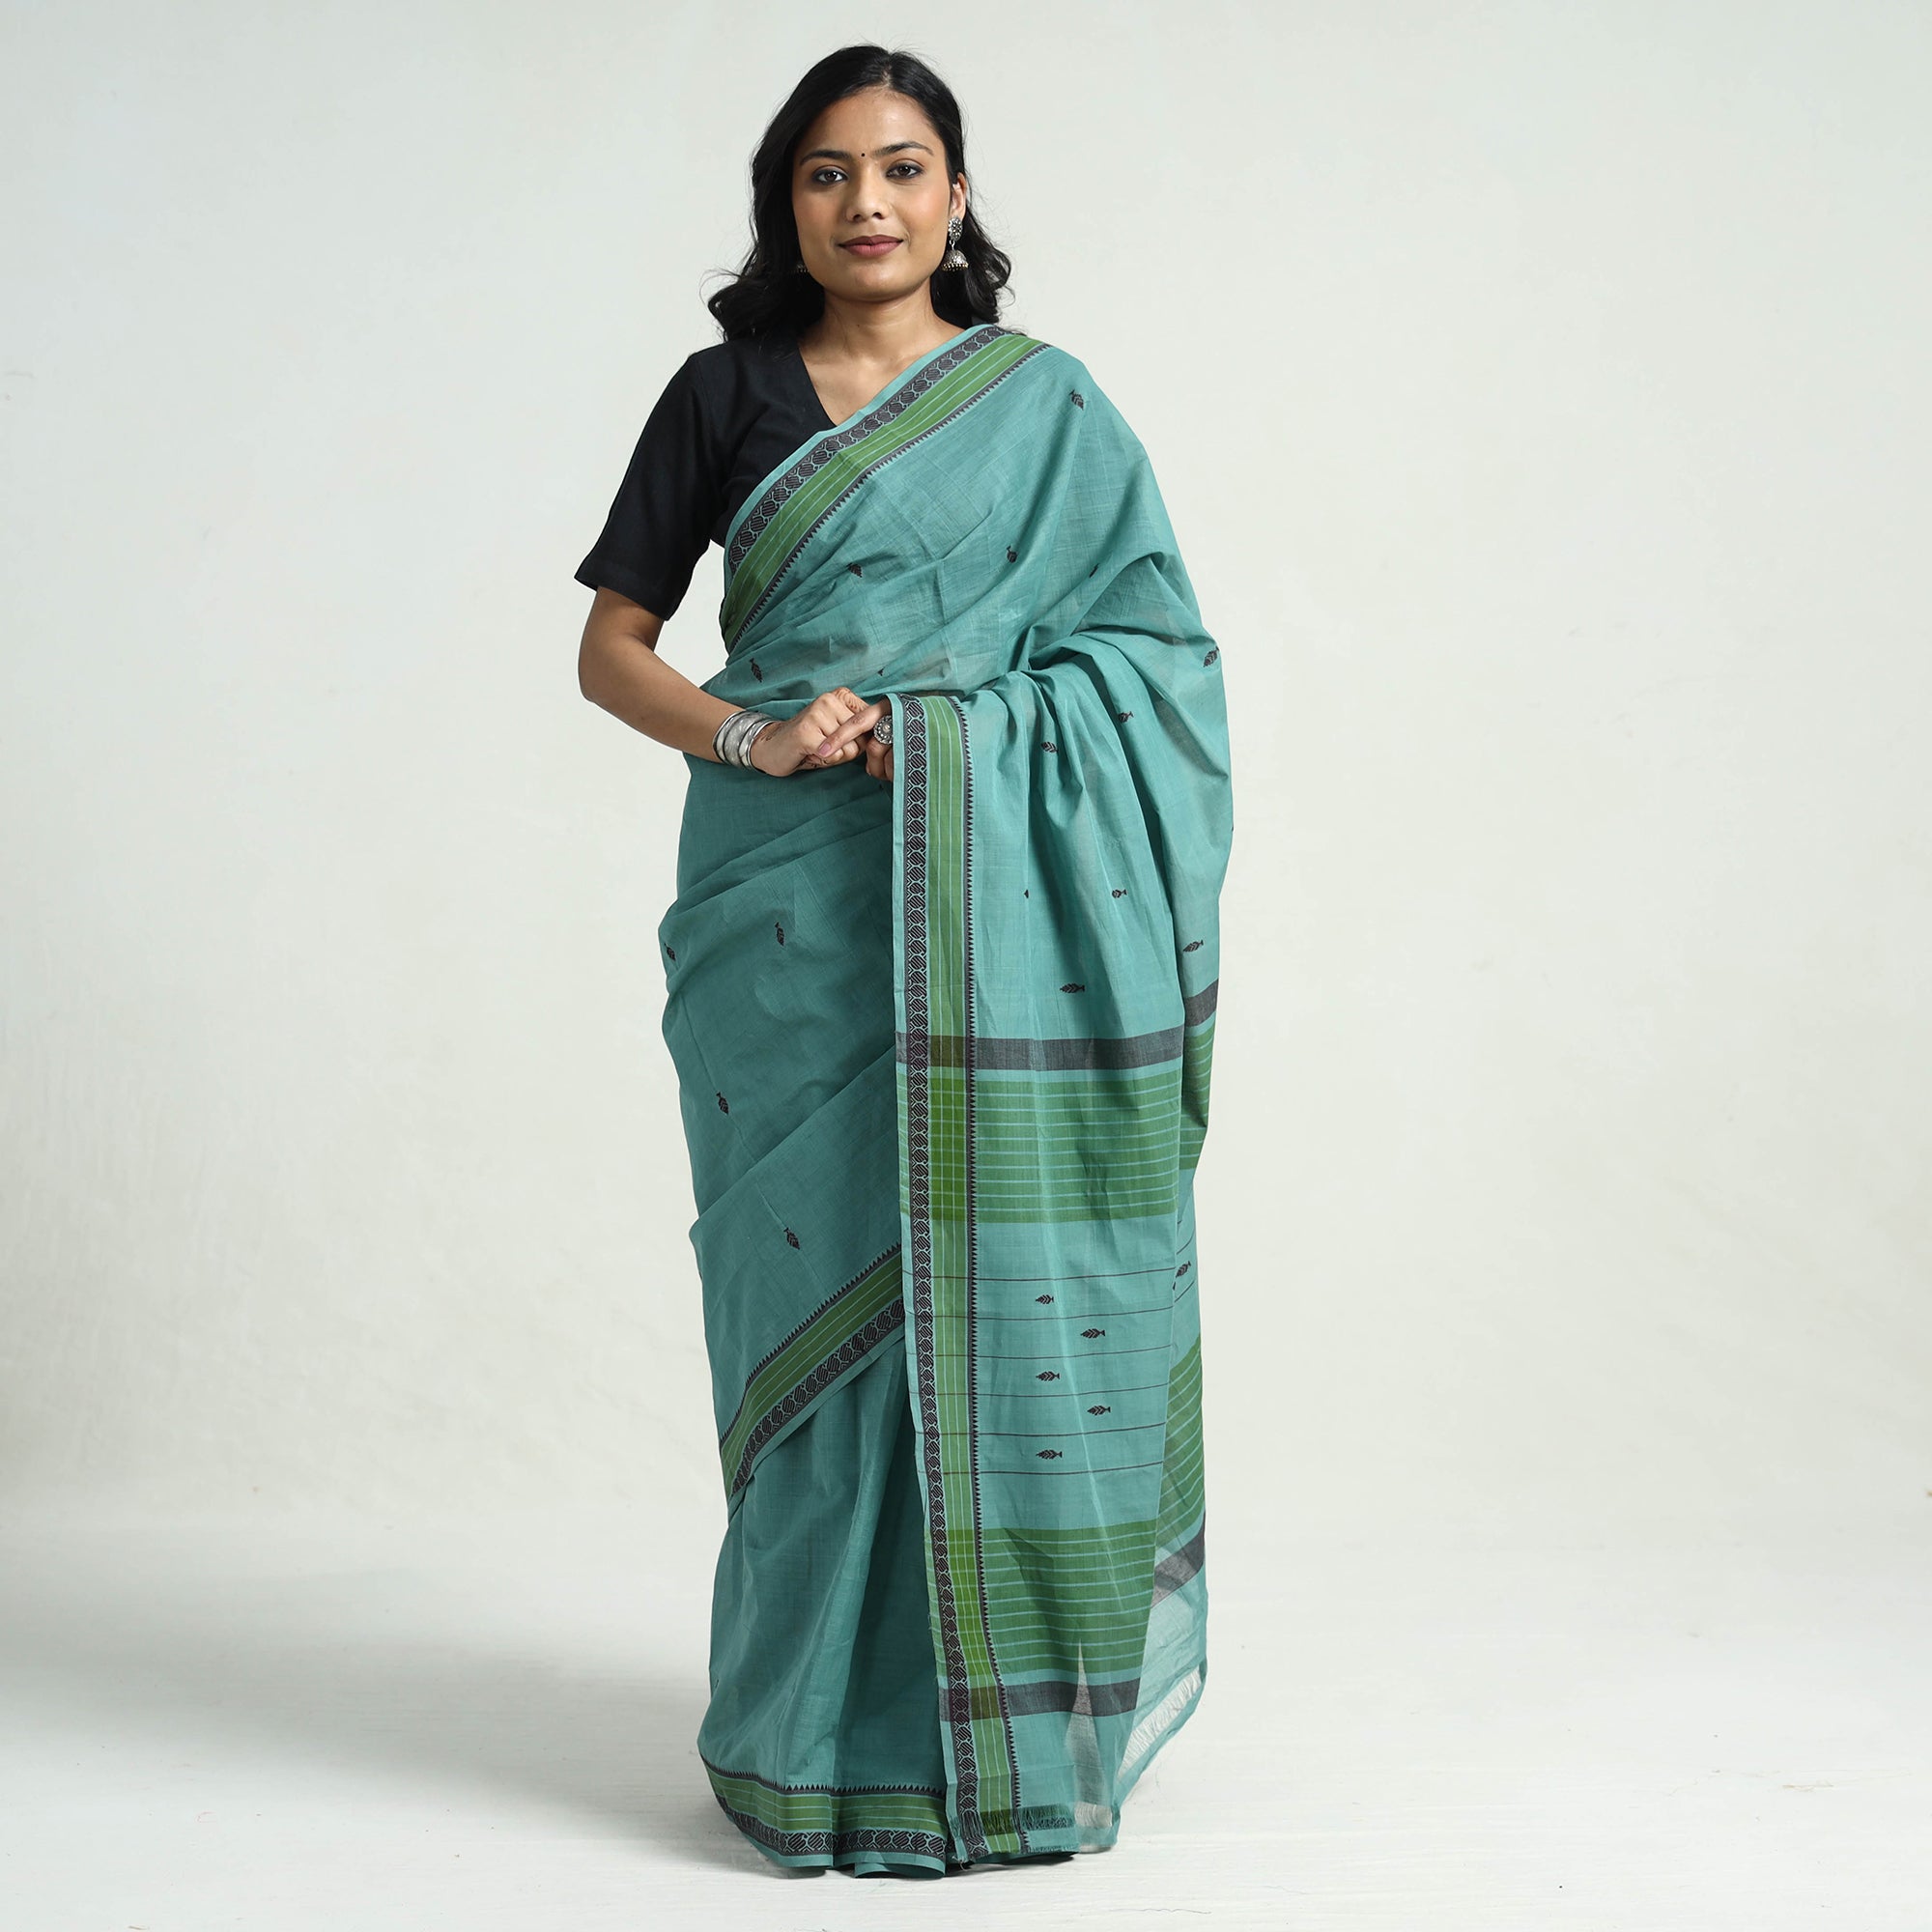 uppada sarees/uppada pattu sarees/uppada tissue sarees/uppada sarees online  shopping at www.uppada.com | Indian beauty saree, Beautiful dresses, Fashion